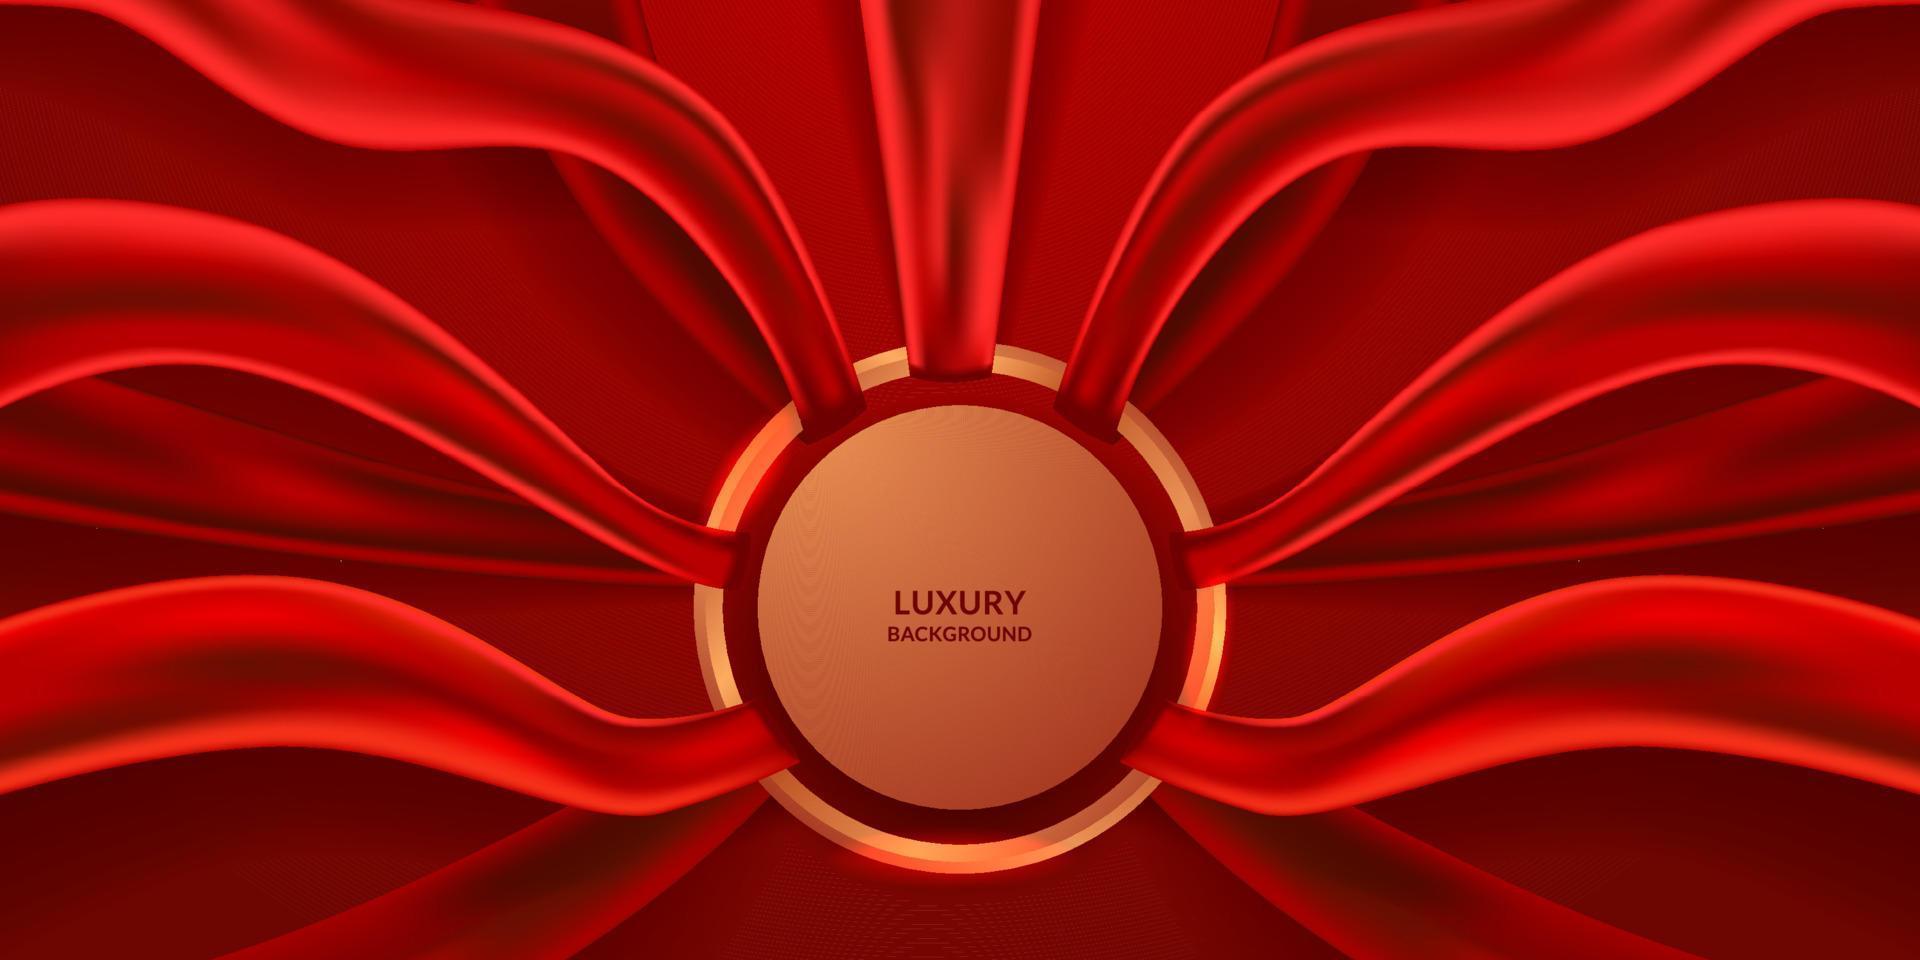 fundo abstrato de produto de beleza de luxo com tecido de cor vermelha tecido tecido cetim com anel dourado decoração de círculo redondo vetor